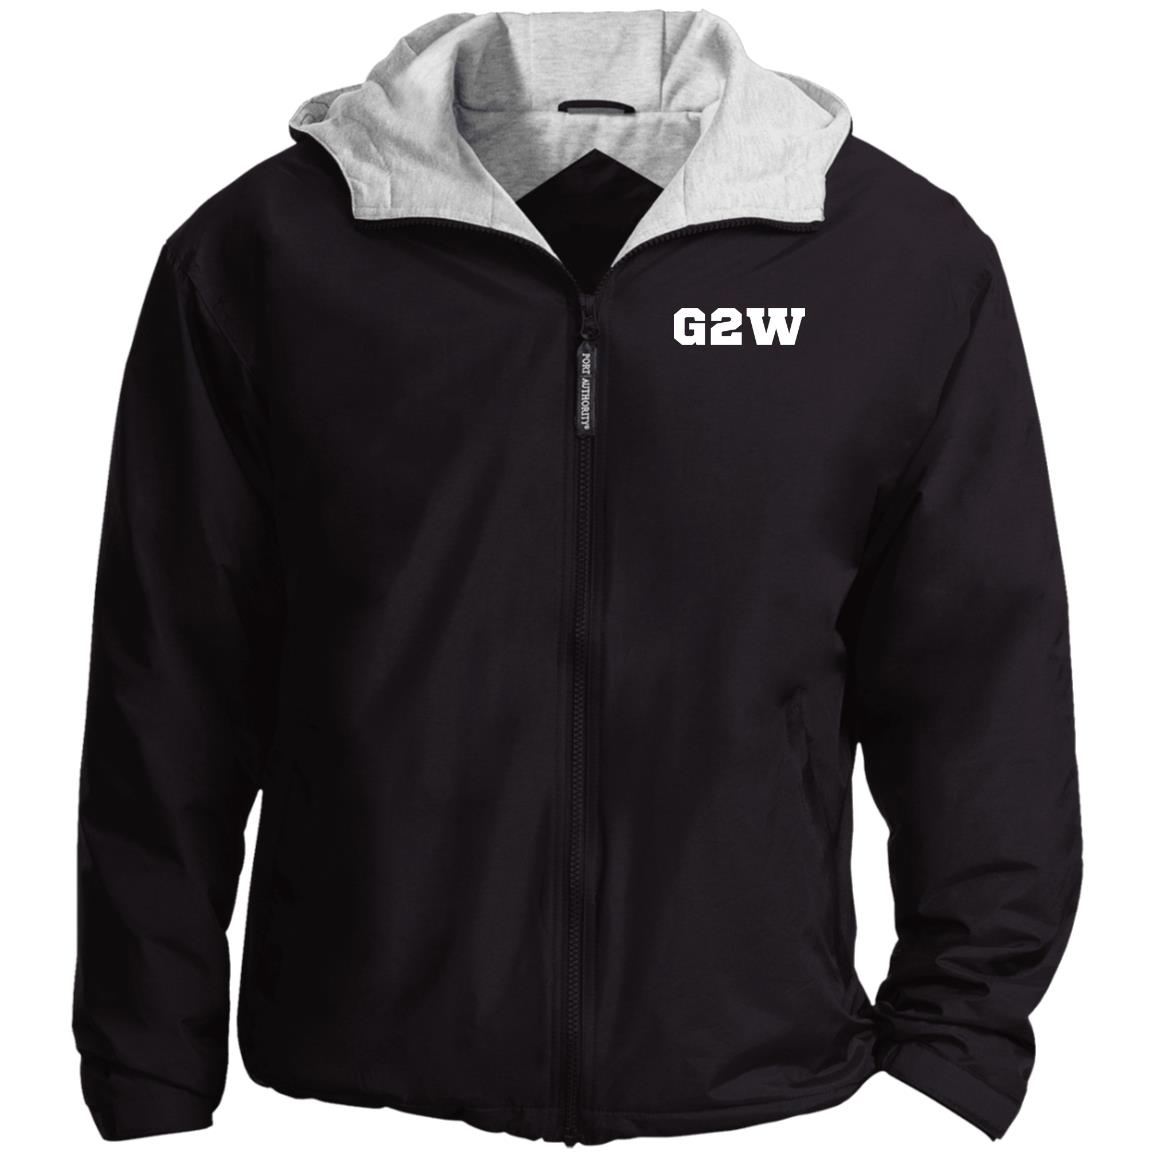 G2W White Team Jacket